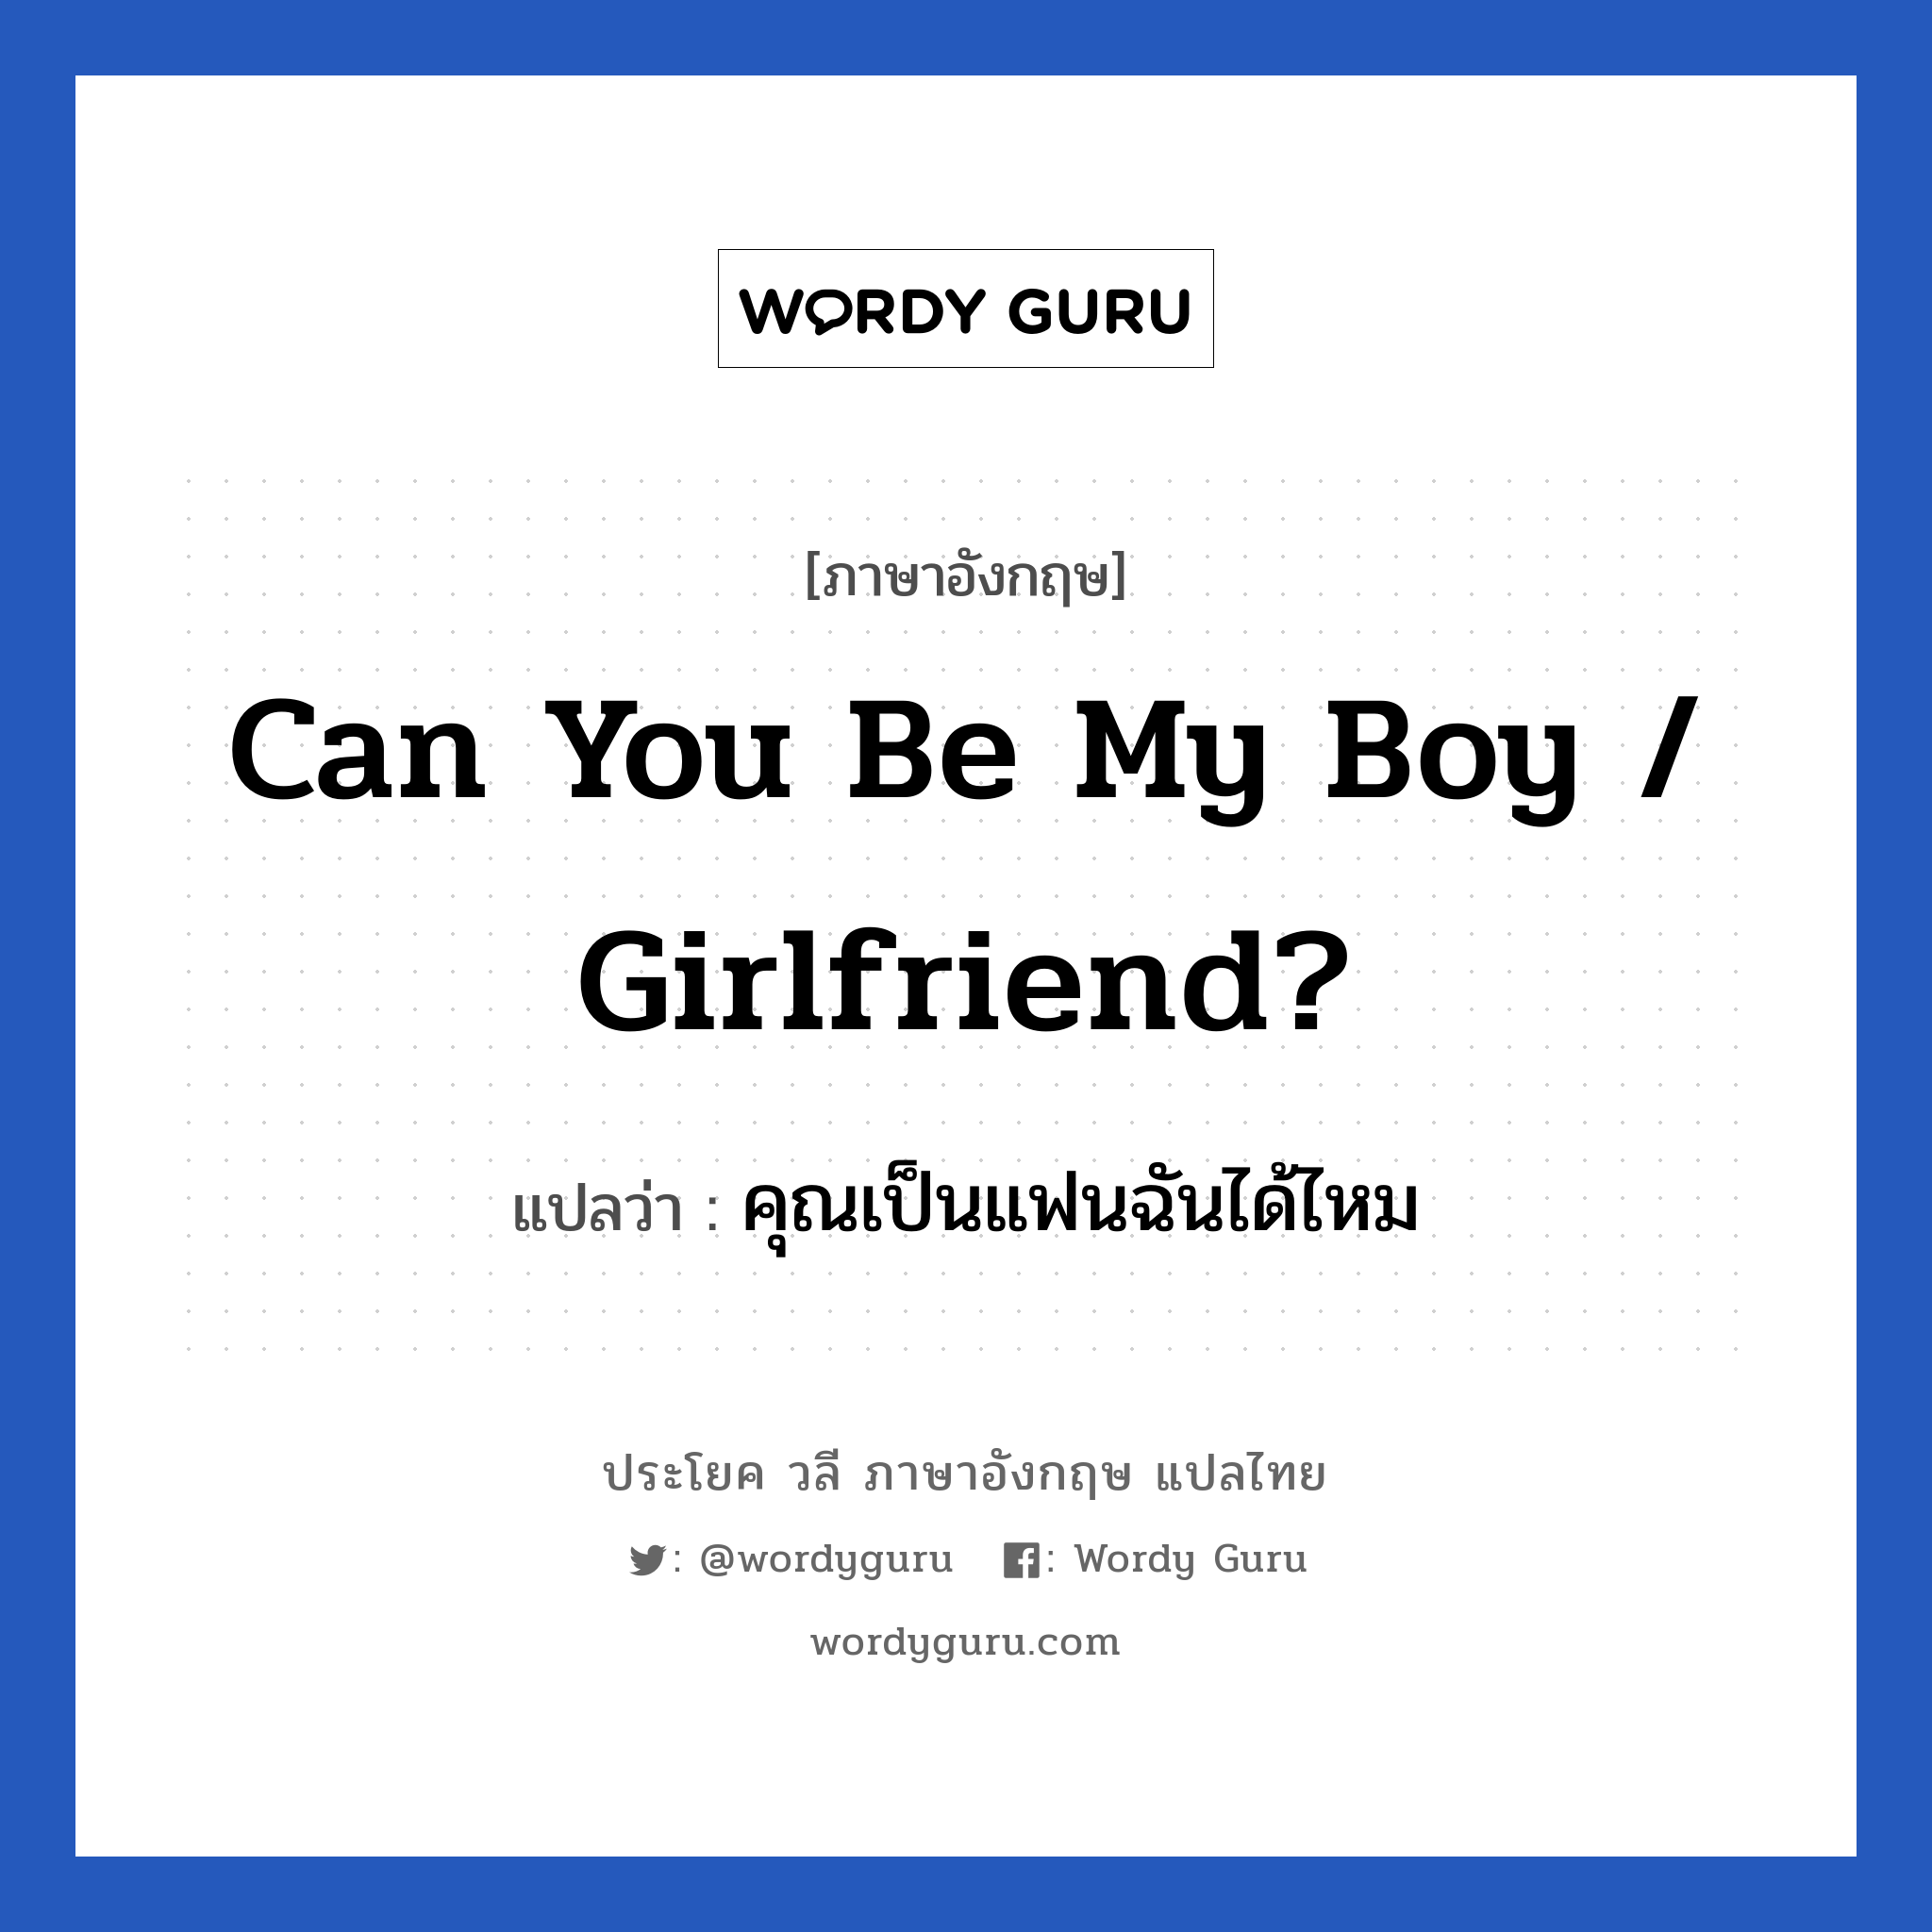 คุณเป็นแฟนฉันได้ไหม ภาษาอังกฤษ?, วลีภาษาอังกฤษ คุณเป็นแฟนฉันได้ไหม แปลว่า Can you be my boy / girlfriend? หมวด ความรัก